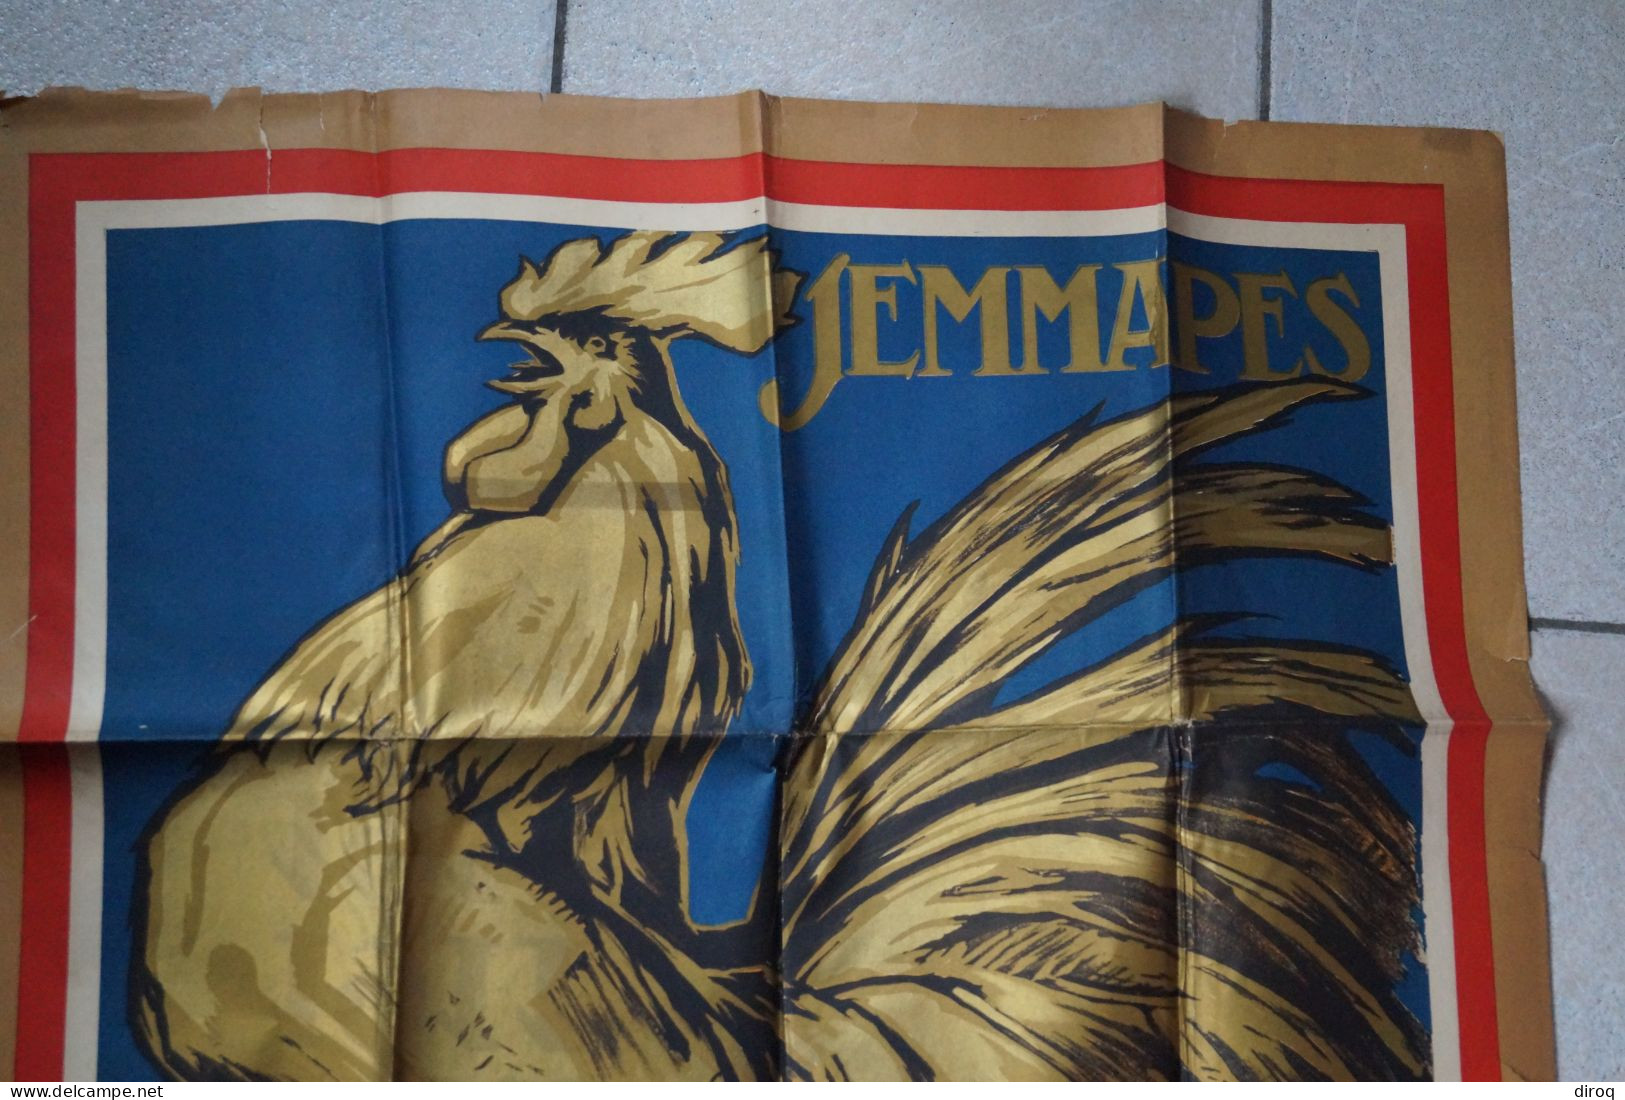 ancienne affiche originale de Jemappes 1922,signé Anto. Carte,trace de scotch à l'arrière,voir photos,118/73 Cm.